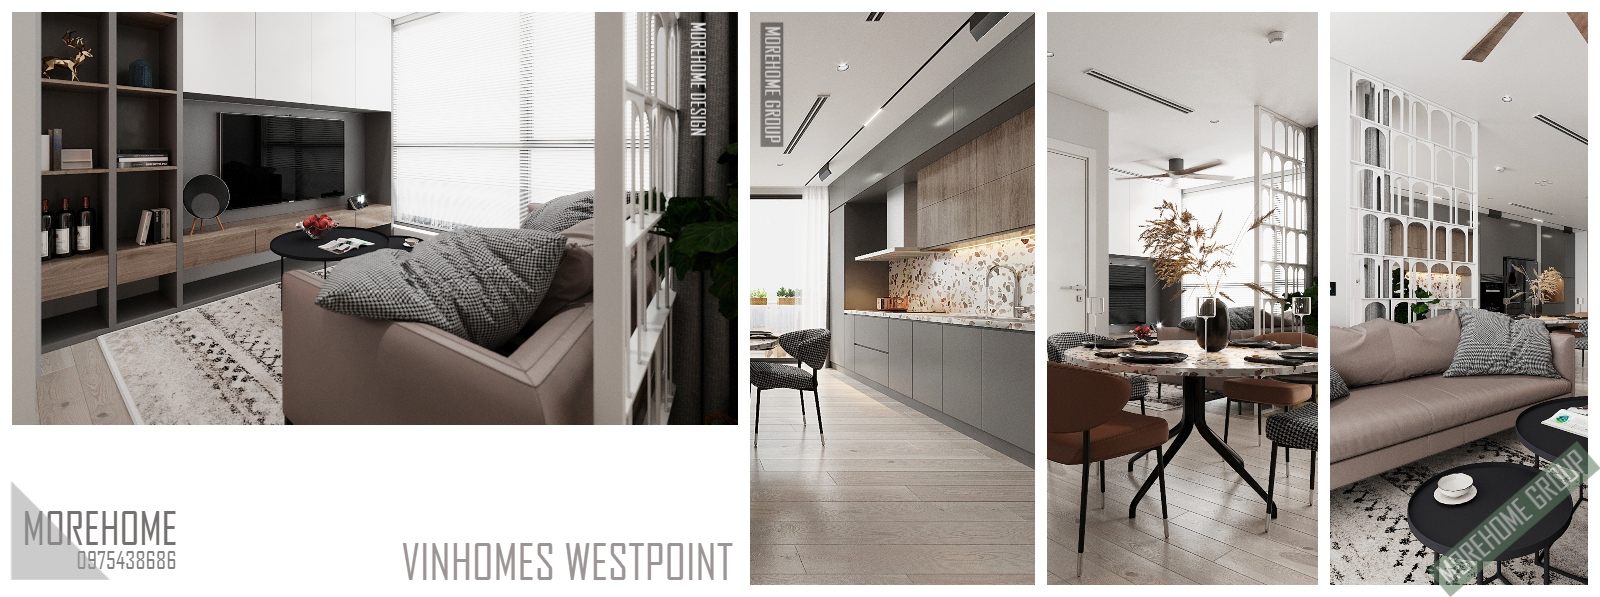 Thiết kế nội thất chung cư Vinhomes Westpoint Đỗ Đức Dục Hà Nội